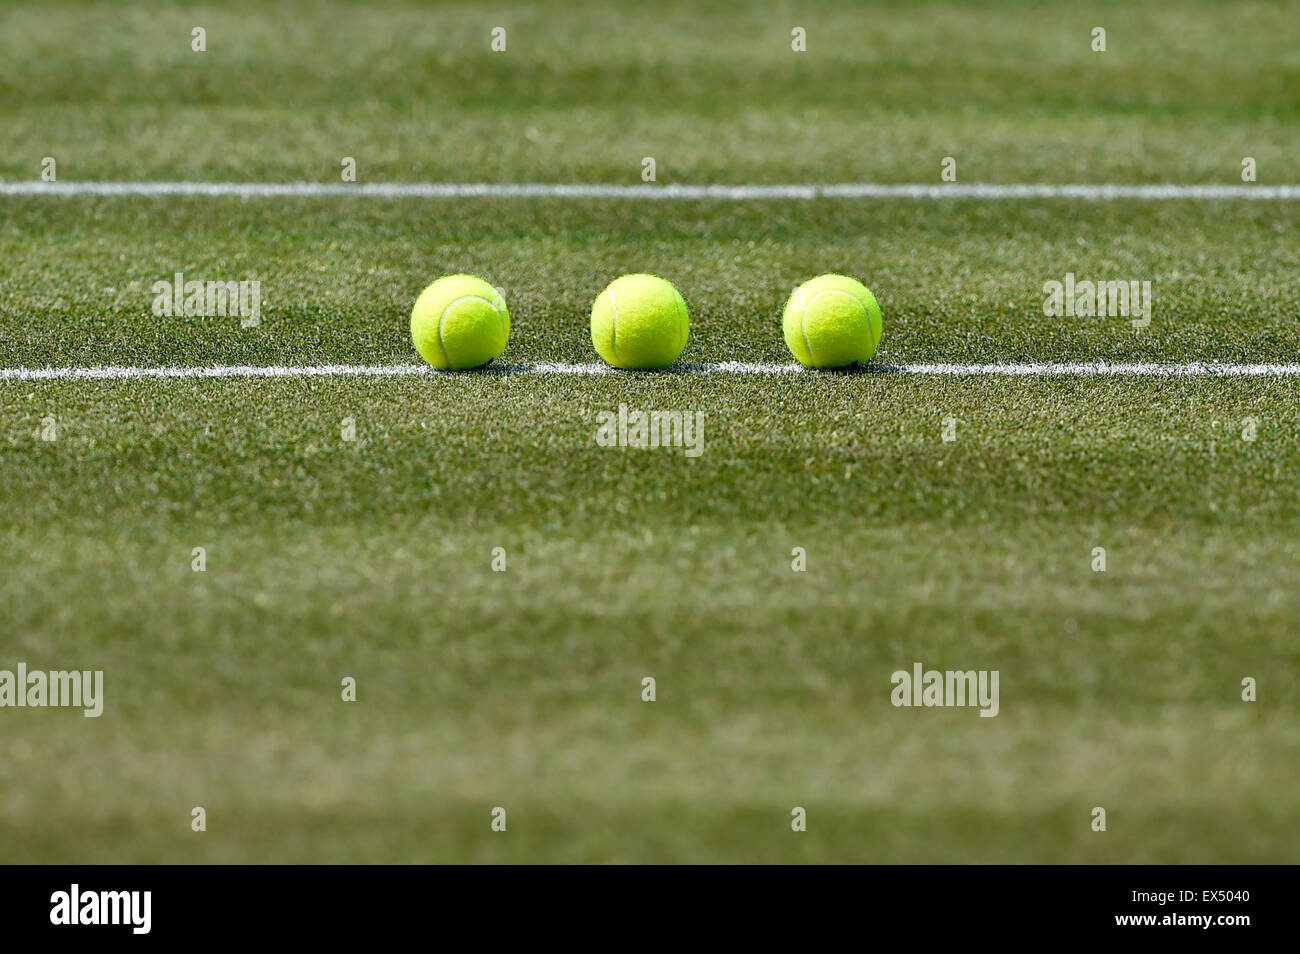 Les balles de tennis sur gazon, Stuttgart, Bade-Wurtemberg, Allemagne Banque D'Images